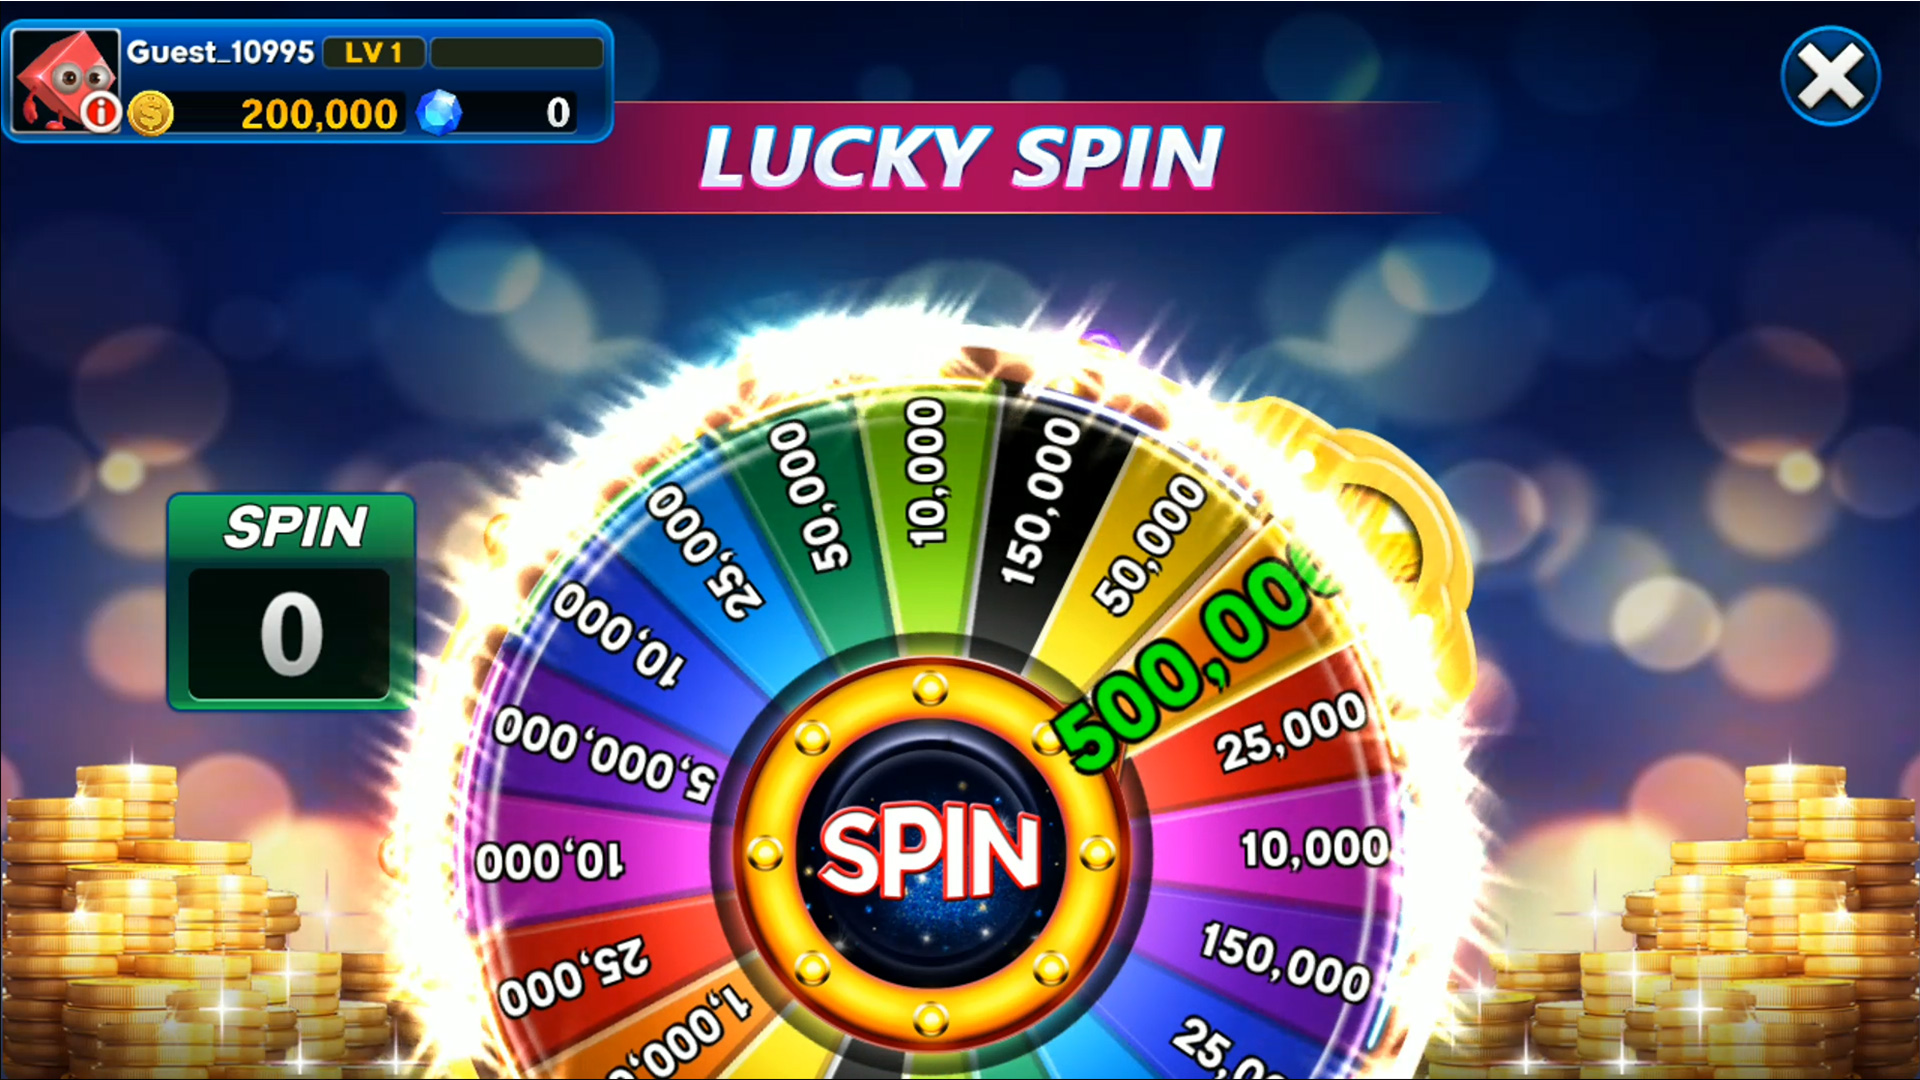 Spin city casino бездепозитный бонус 700h игровые автоматы играть бесплатно и без регистрации новые игры 77777 демо